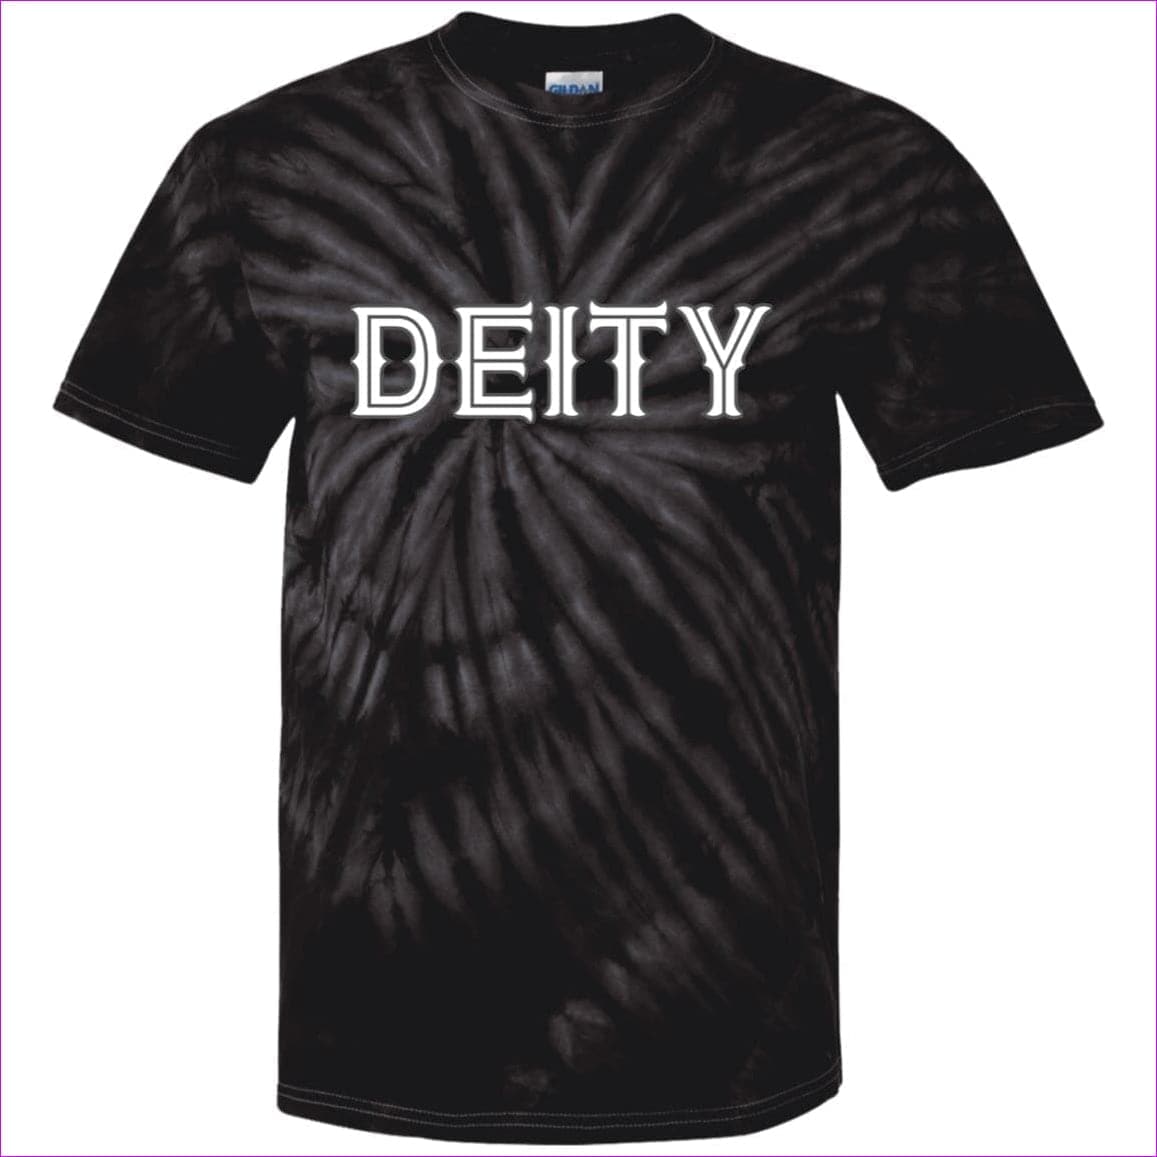 SpiderBlack Deity 100% Cotton Men's Tie Dye T-Shirt - Men's T-Shirts at TFC&H Co.